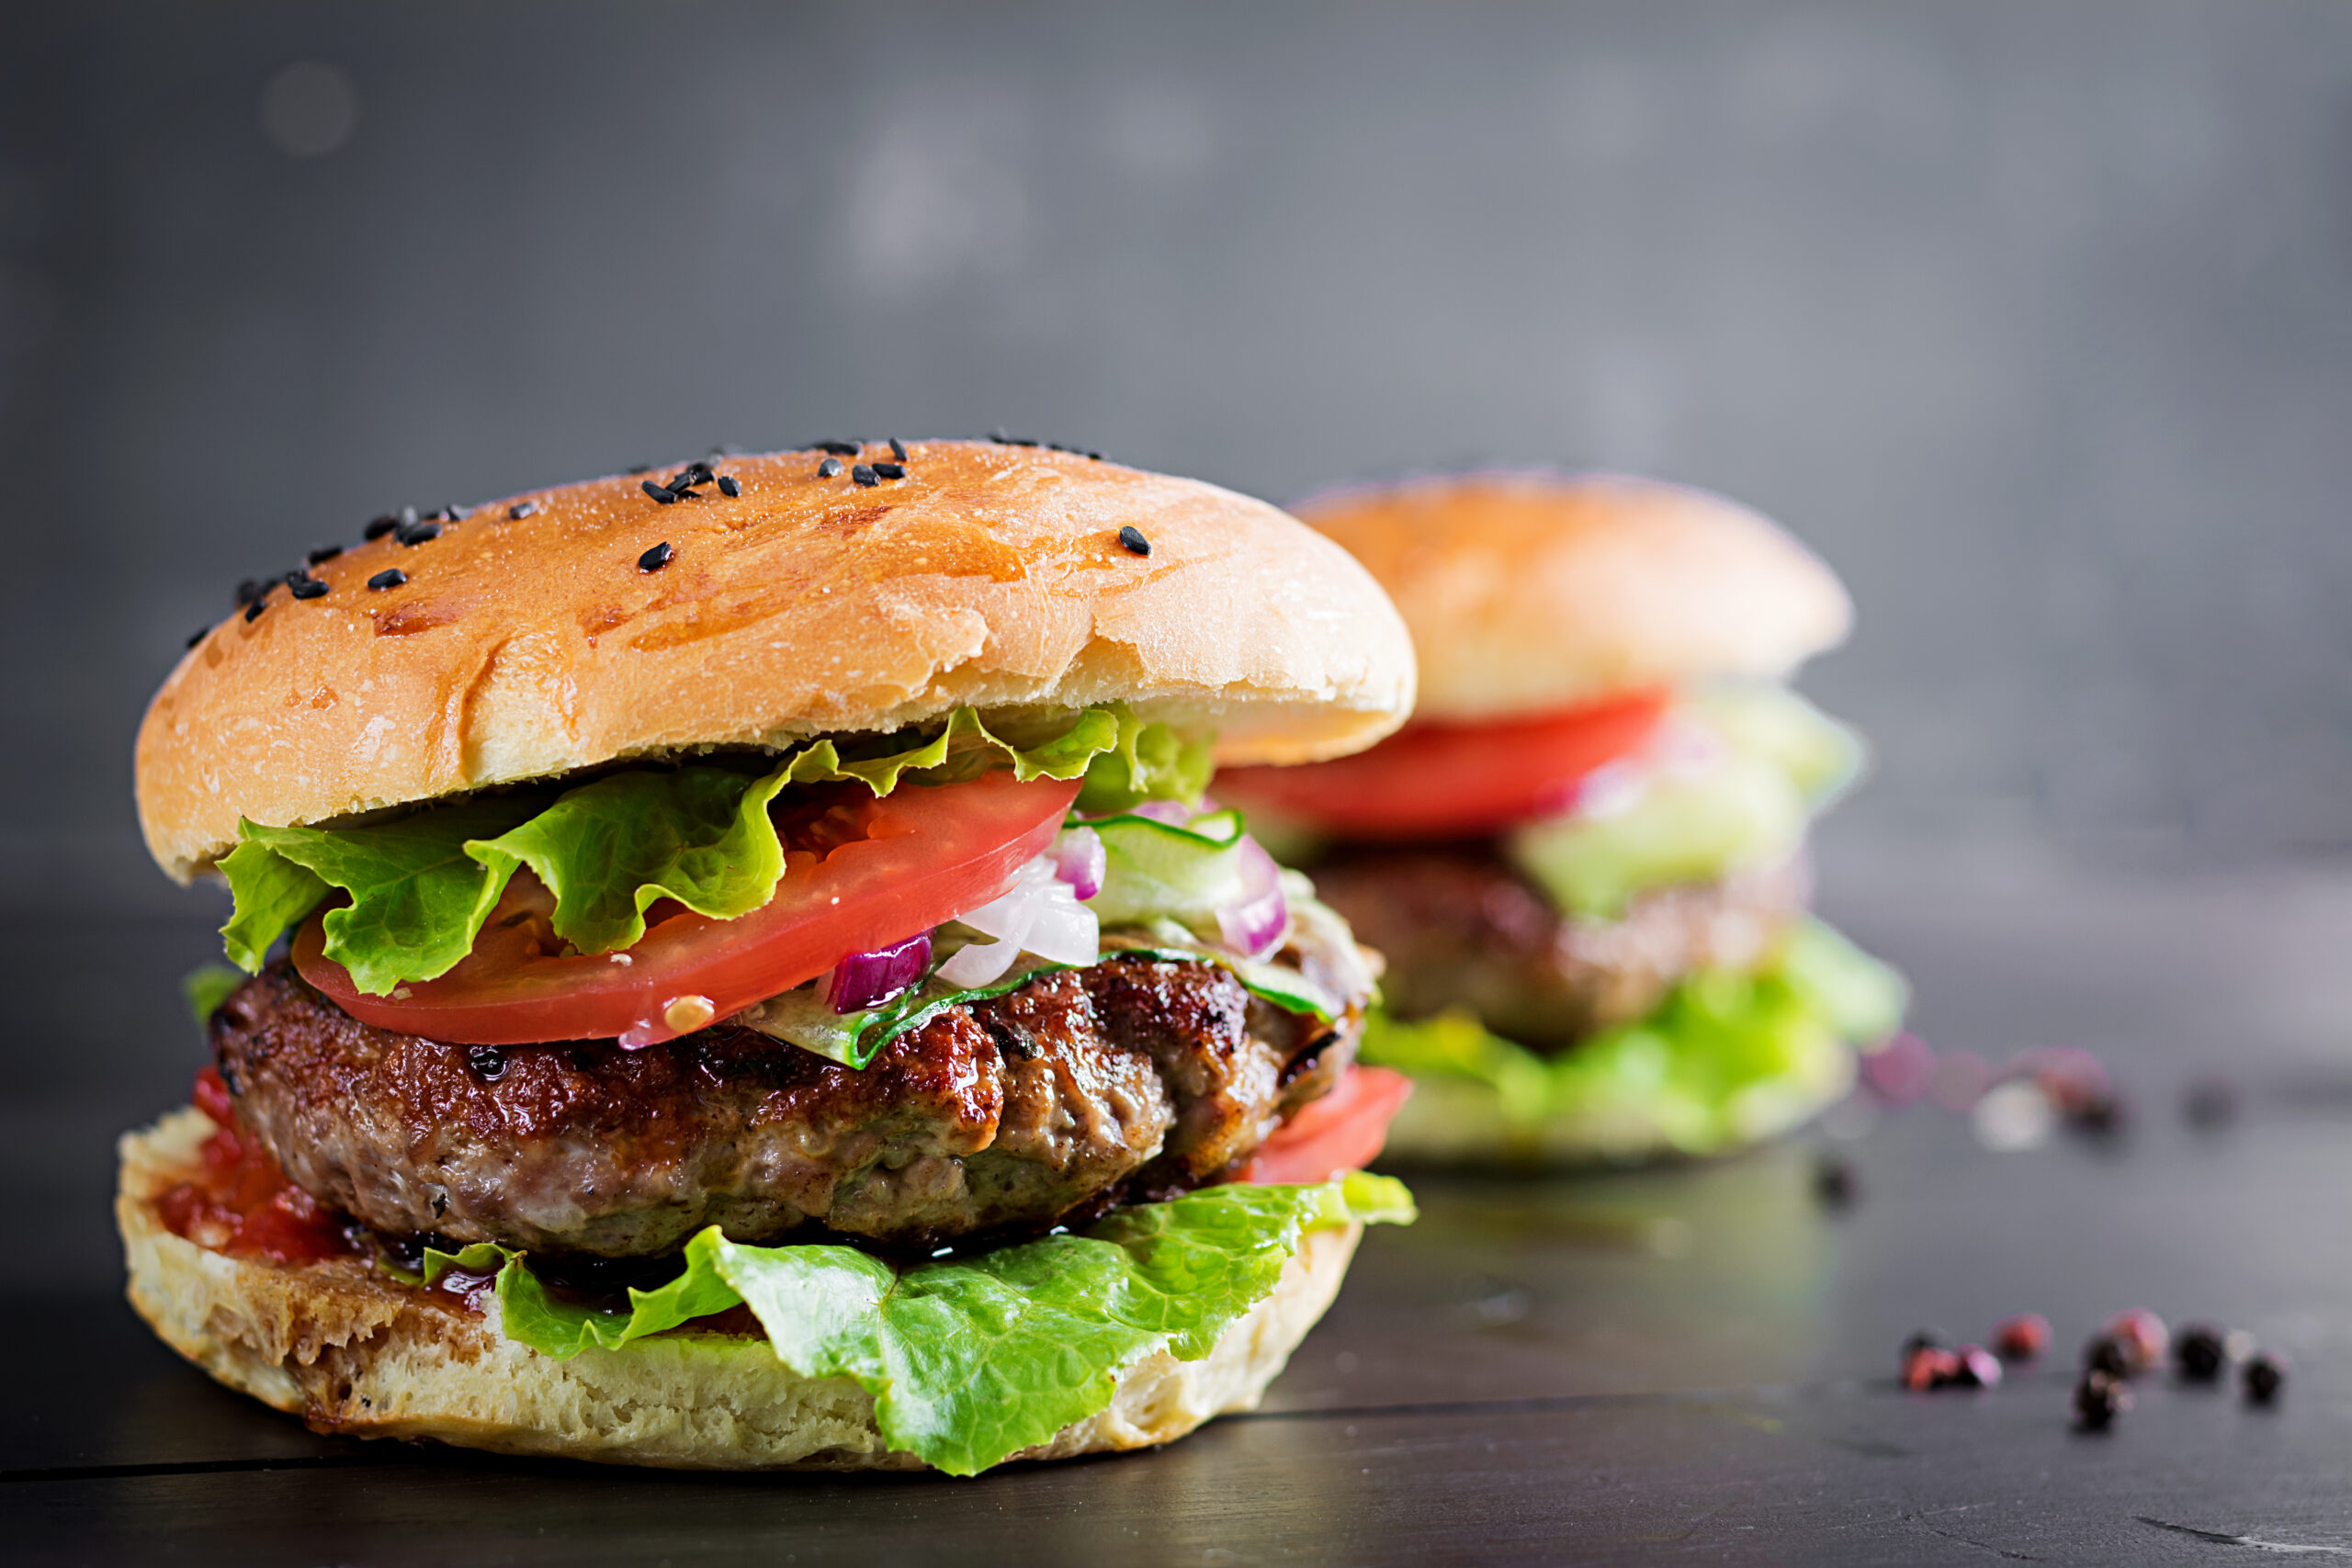 Enjoy a Classic Juicy Beef Burger at Home - pakistanfoodportal.com